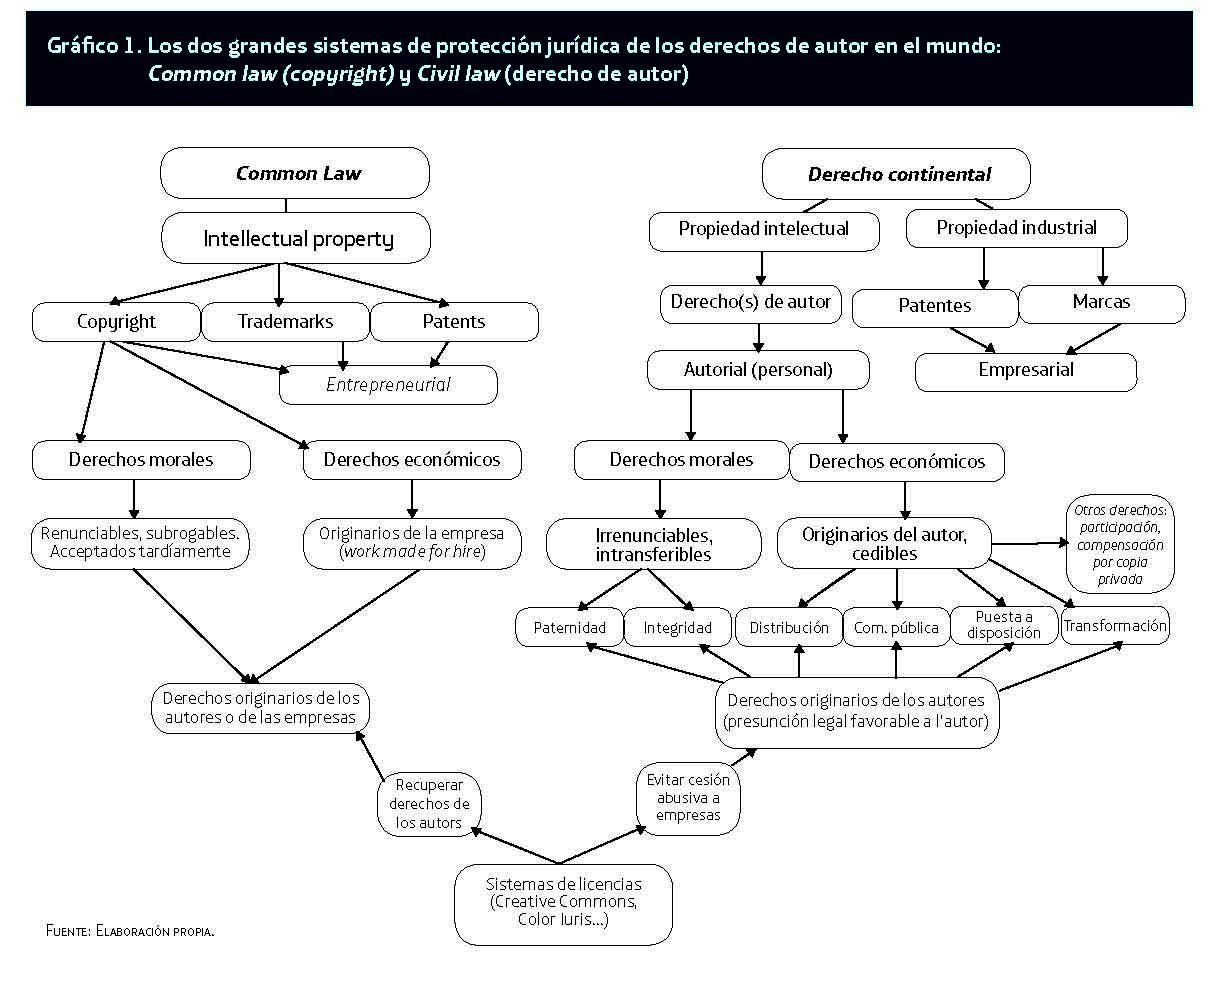 gráfico sobre los dos sistemas de protección jurídica en el mundo: common law y civil law